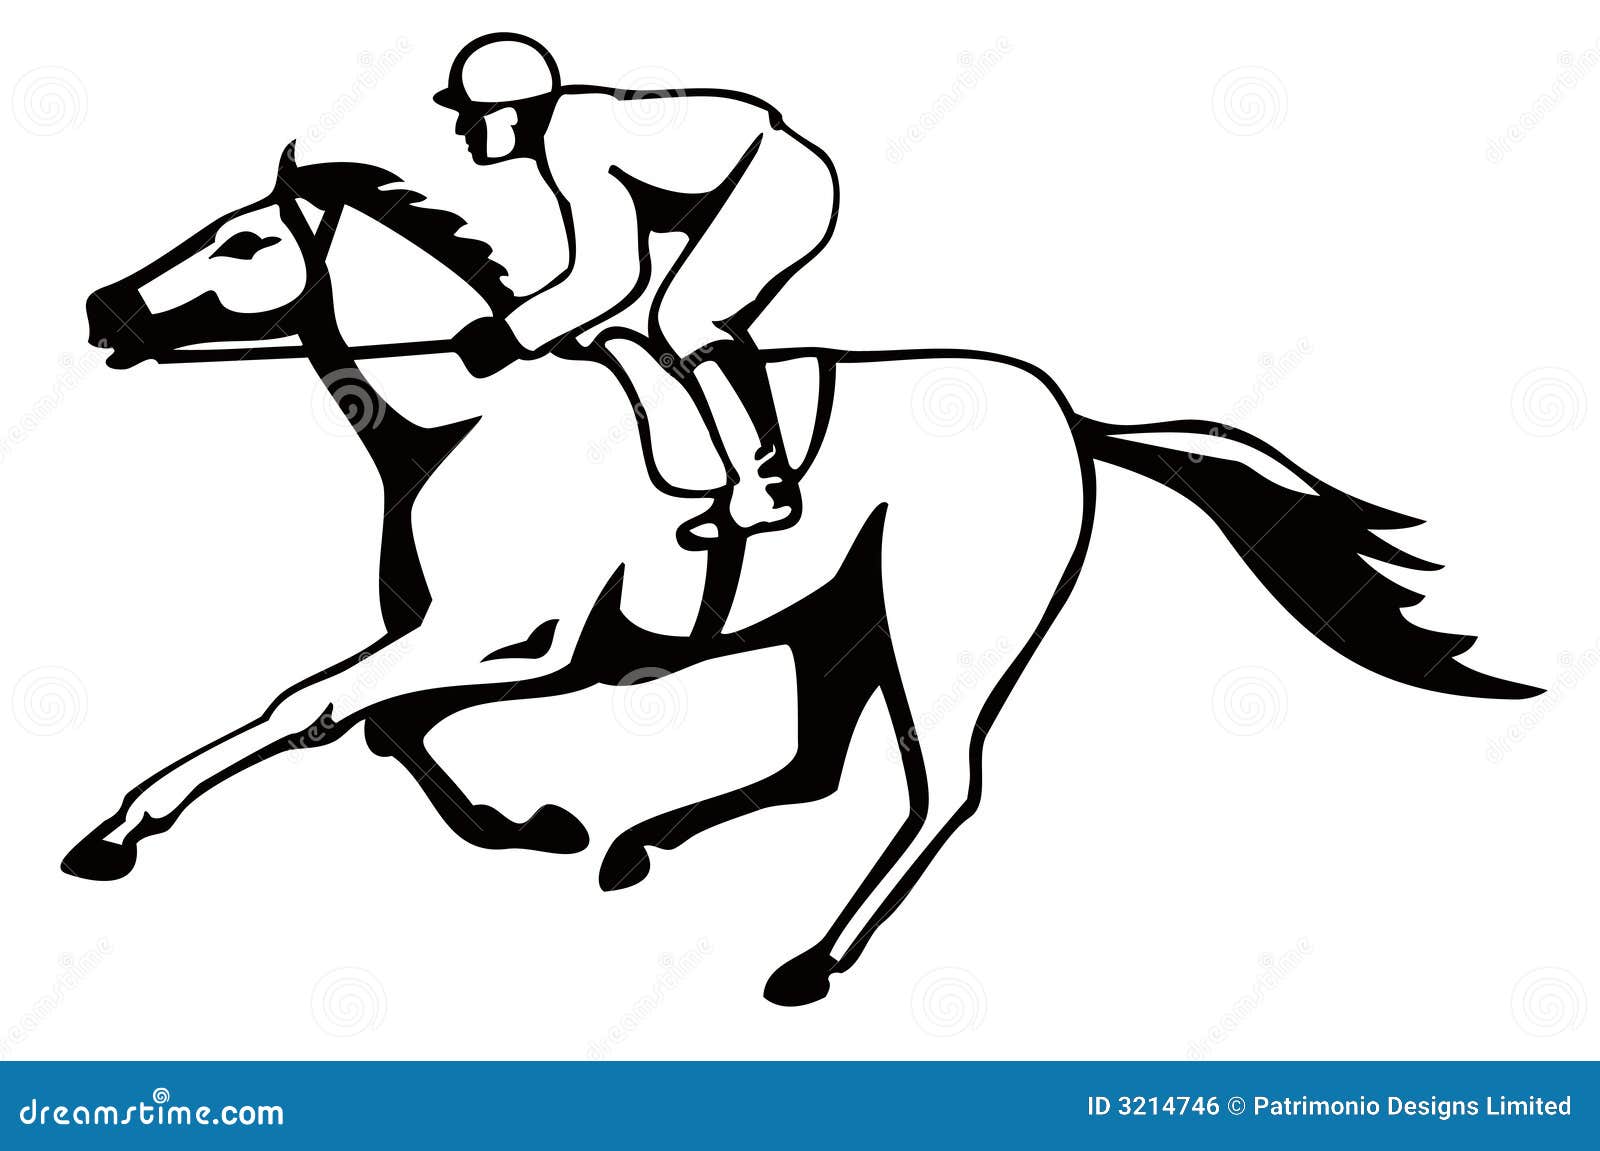 horse jockey clipart free - photo #27